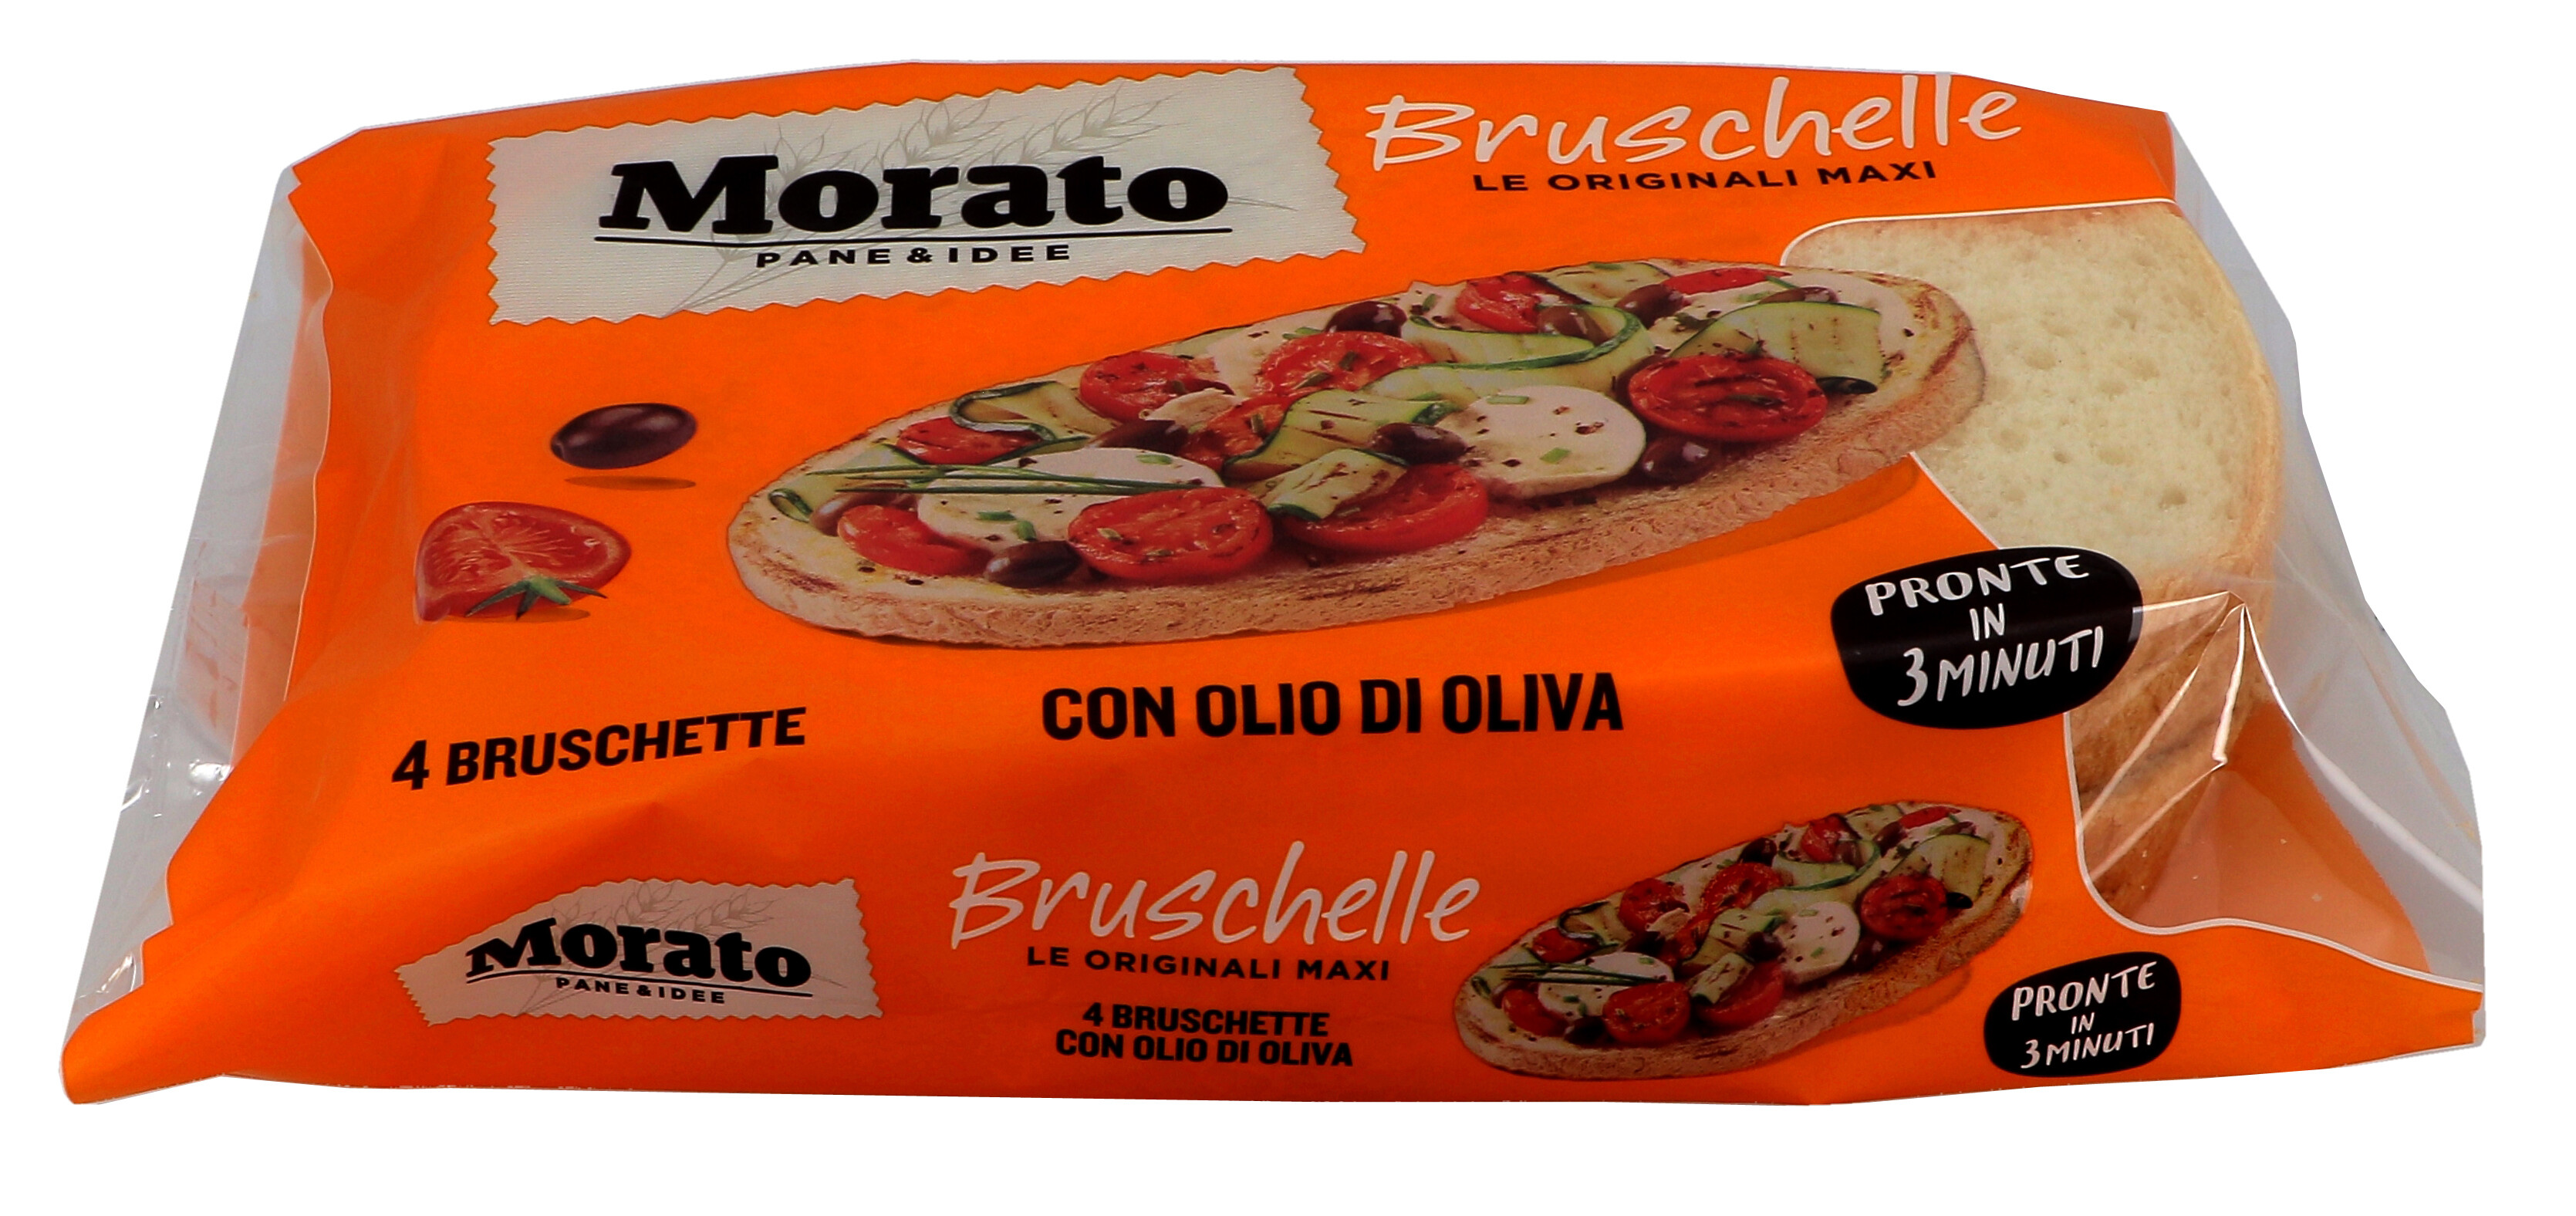 Morato Bruschelle Maxi 8x400gr Bruschetta Bread with Olive Oil